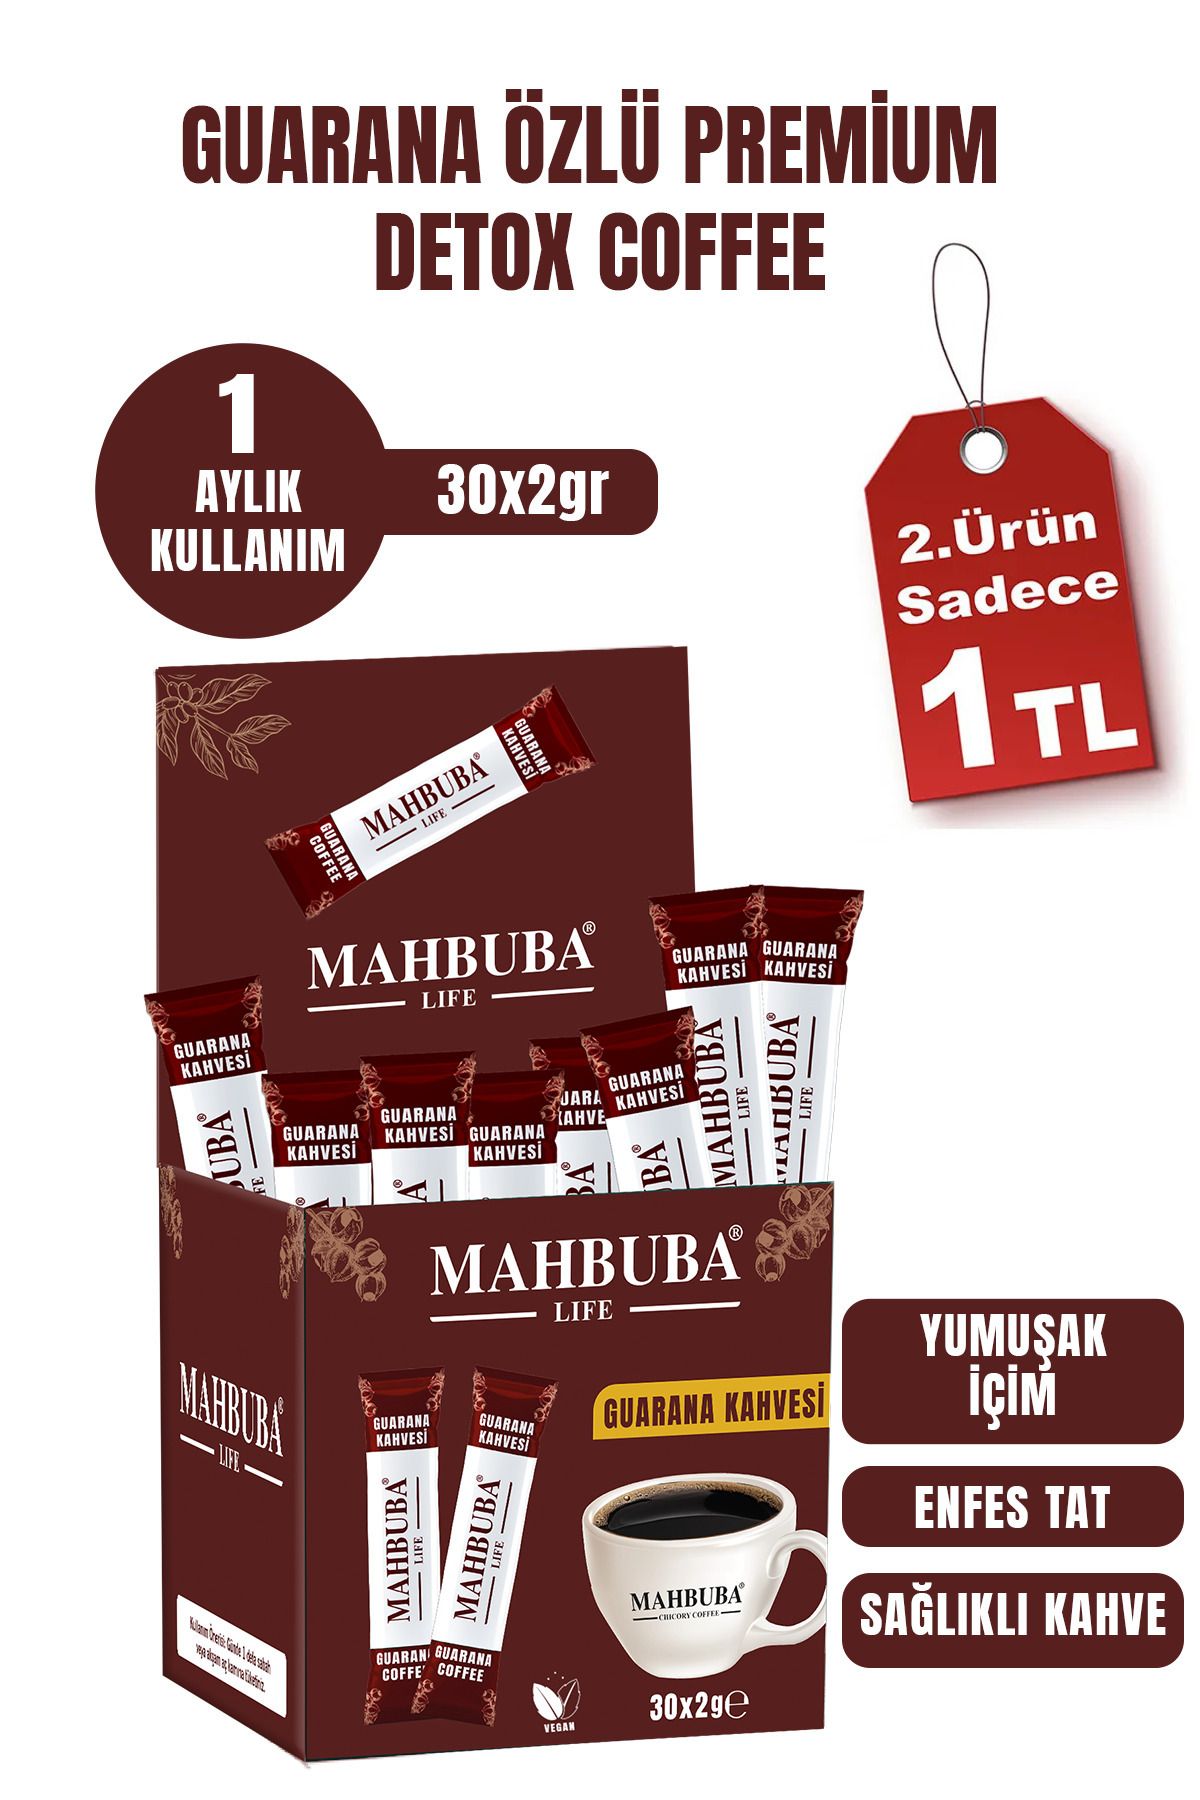 Mahbuba Life Guarana Özlü Premium Detoks Diyet Zayıflama Kahvesi Gün Boyu Enerji 30x2gr 1 Aylık Kullanım